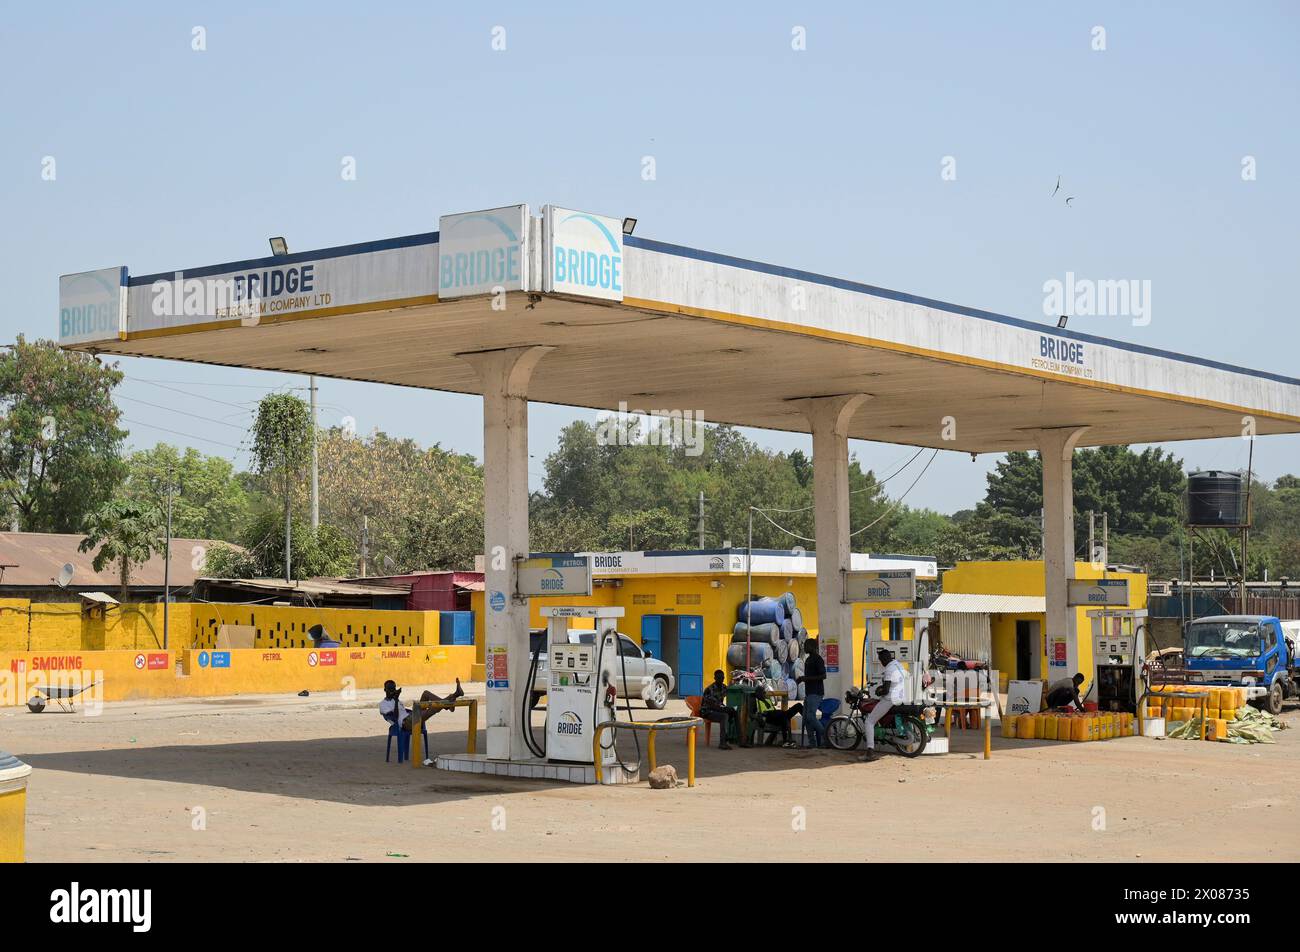 SUDAN DEL SUD, capitale Juba, stazione di servizio Bridge, il paese ricco di petrolio non ha una propria raffineria di petrolio e sta importando carburante / SÜDSUDAN, Hauptstadt Juba, Bridge Petroleum Company Ltd Tankstelle Foto Stock